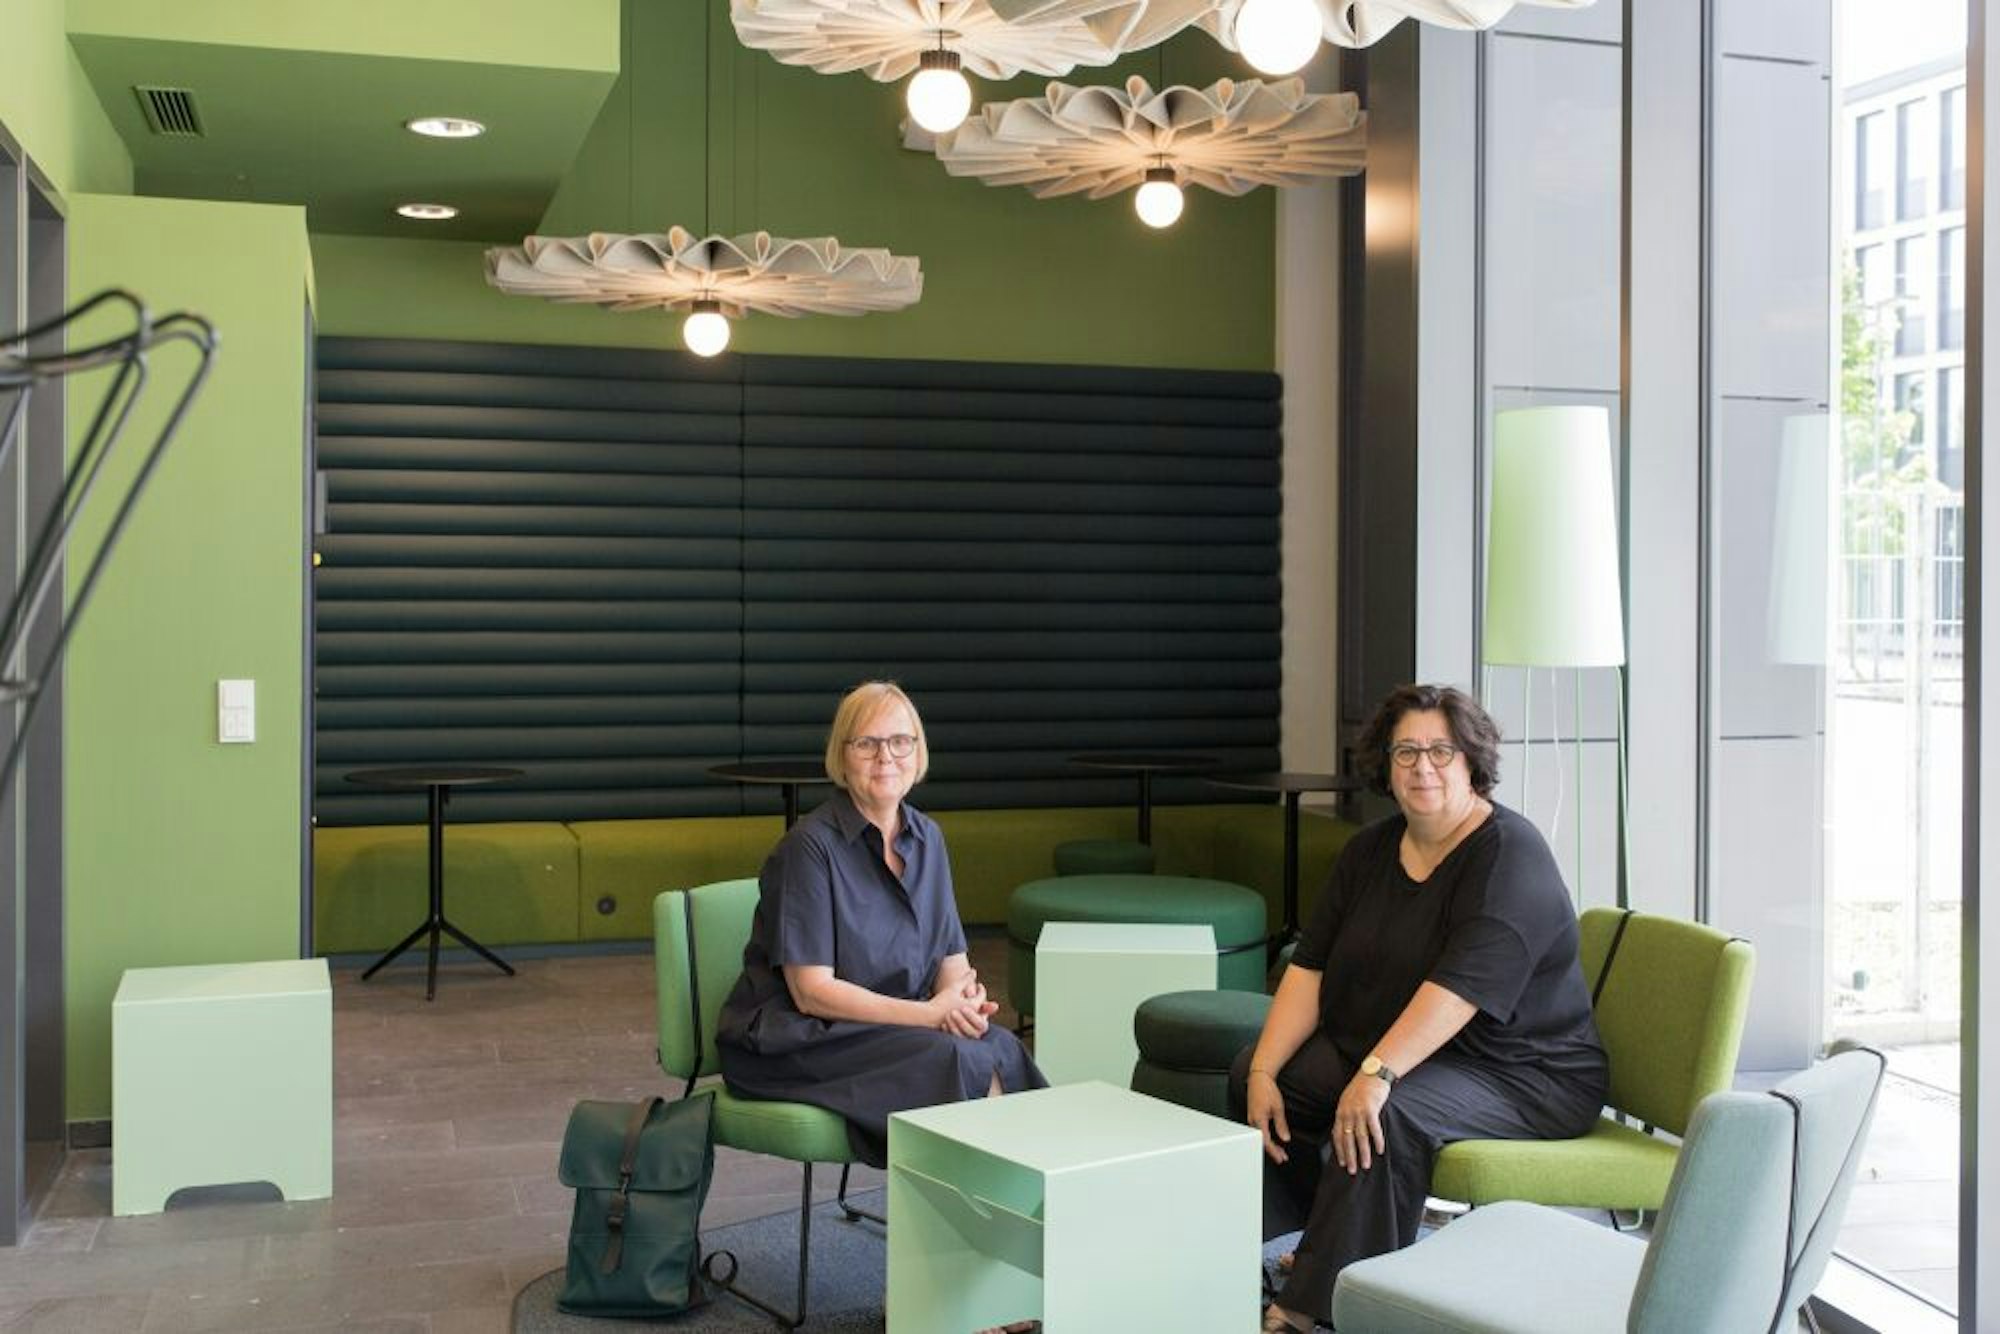 Für die Gestaltung der Campus-Bibliothek sind die Innenarchitektinnen Sabine Altrogge (gr. Foto, l.) und Andrea Weitz verantwortlich.